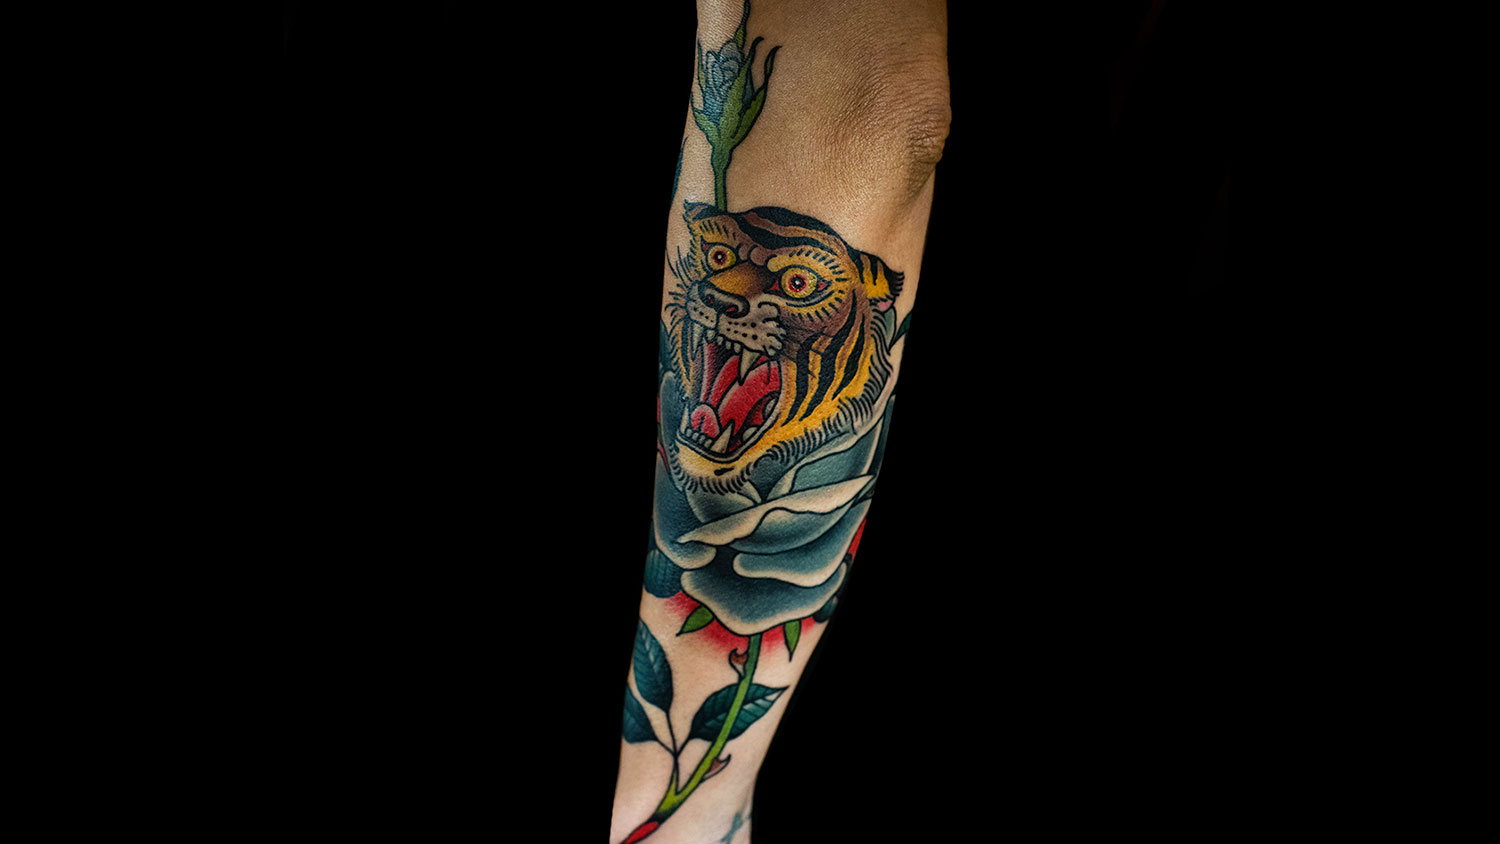 Gorilla Tattoo For Men|realistic Black Tiger & Lion Tattoo For Men -  Warrior & Skull Temporary Tattoo